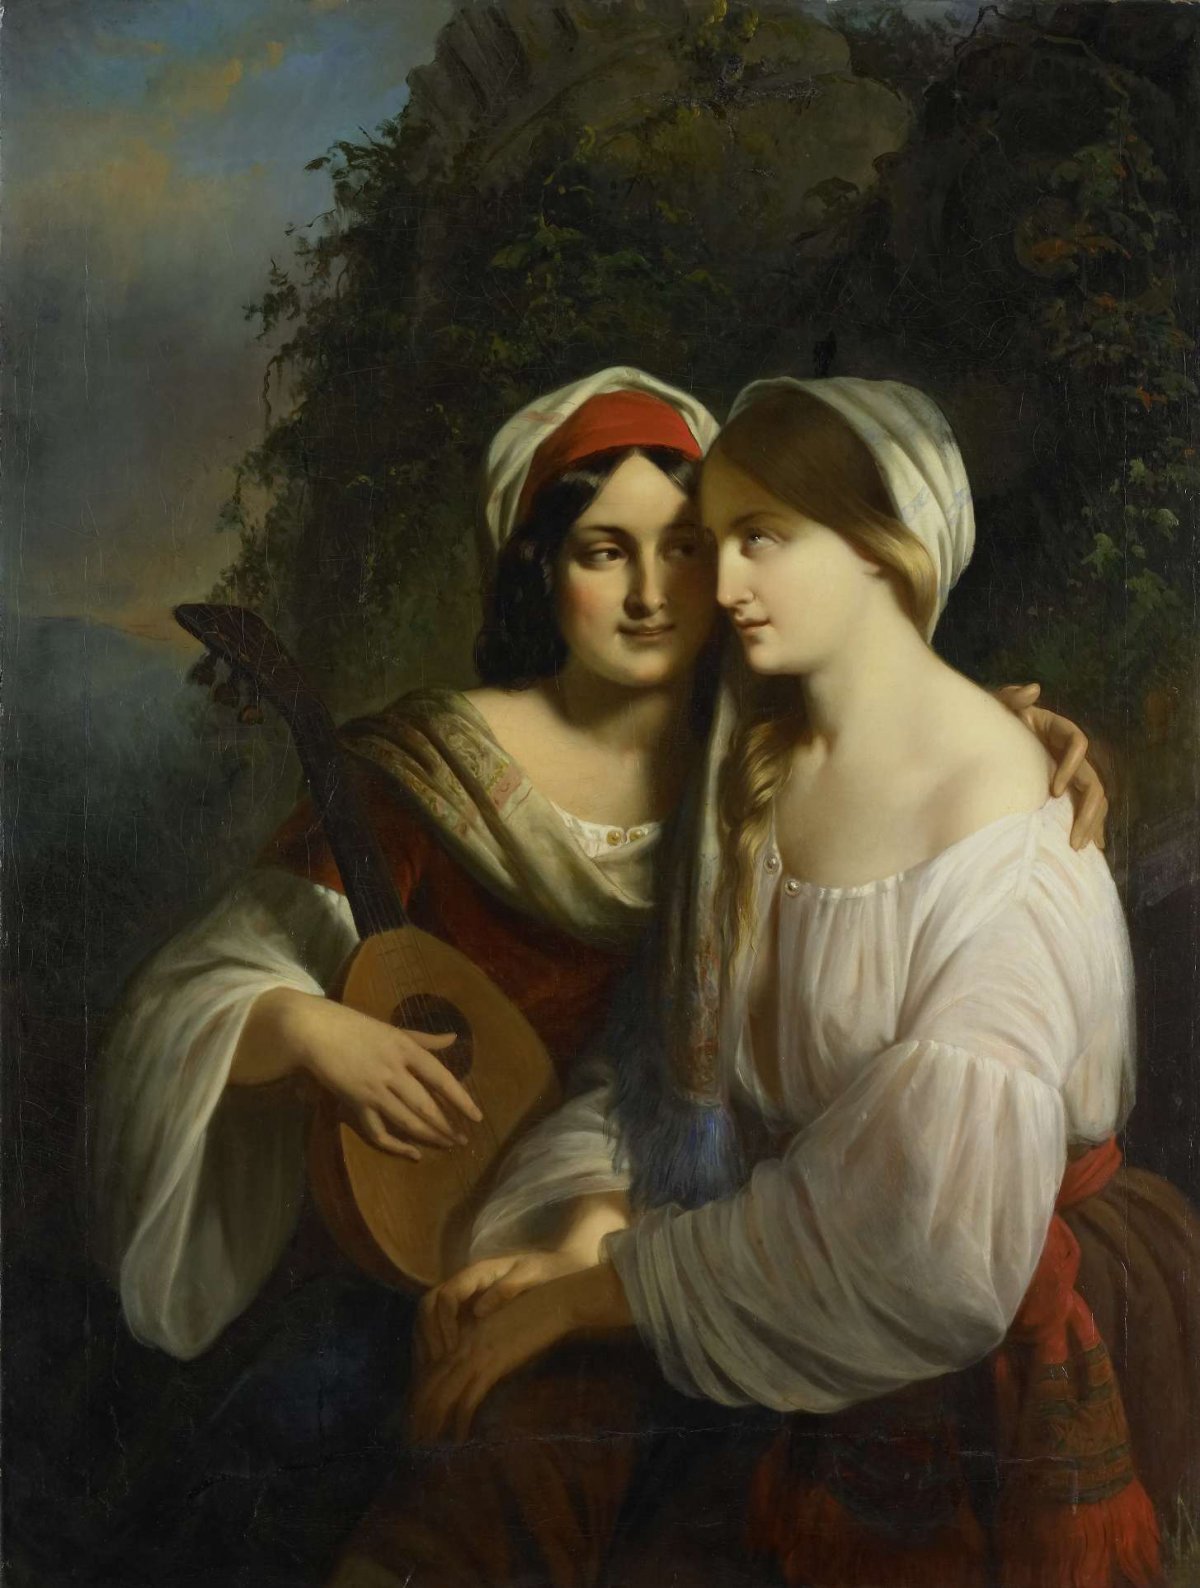 Two women in Italian costume, Moritz Calisch, 1851